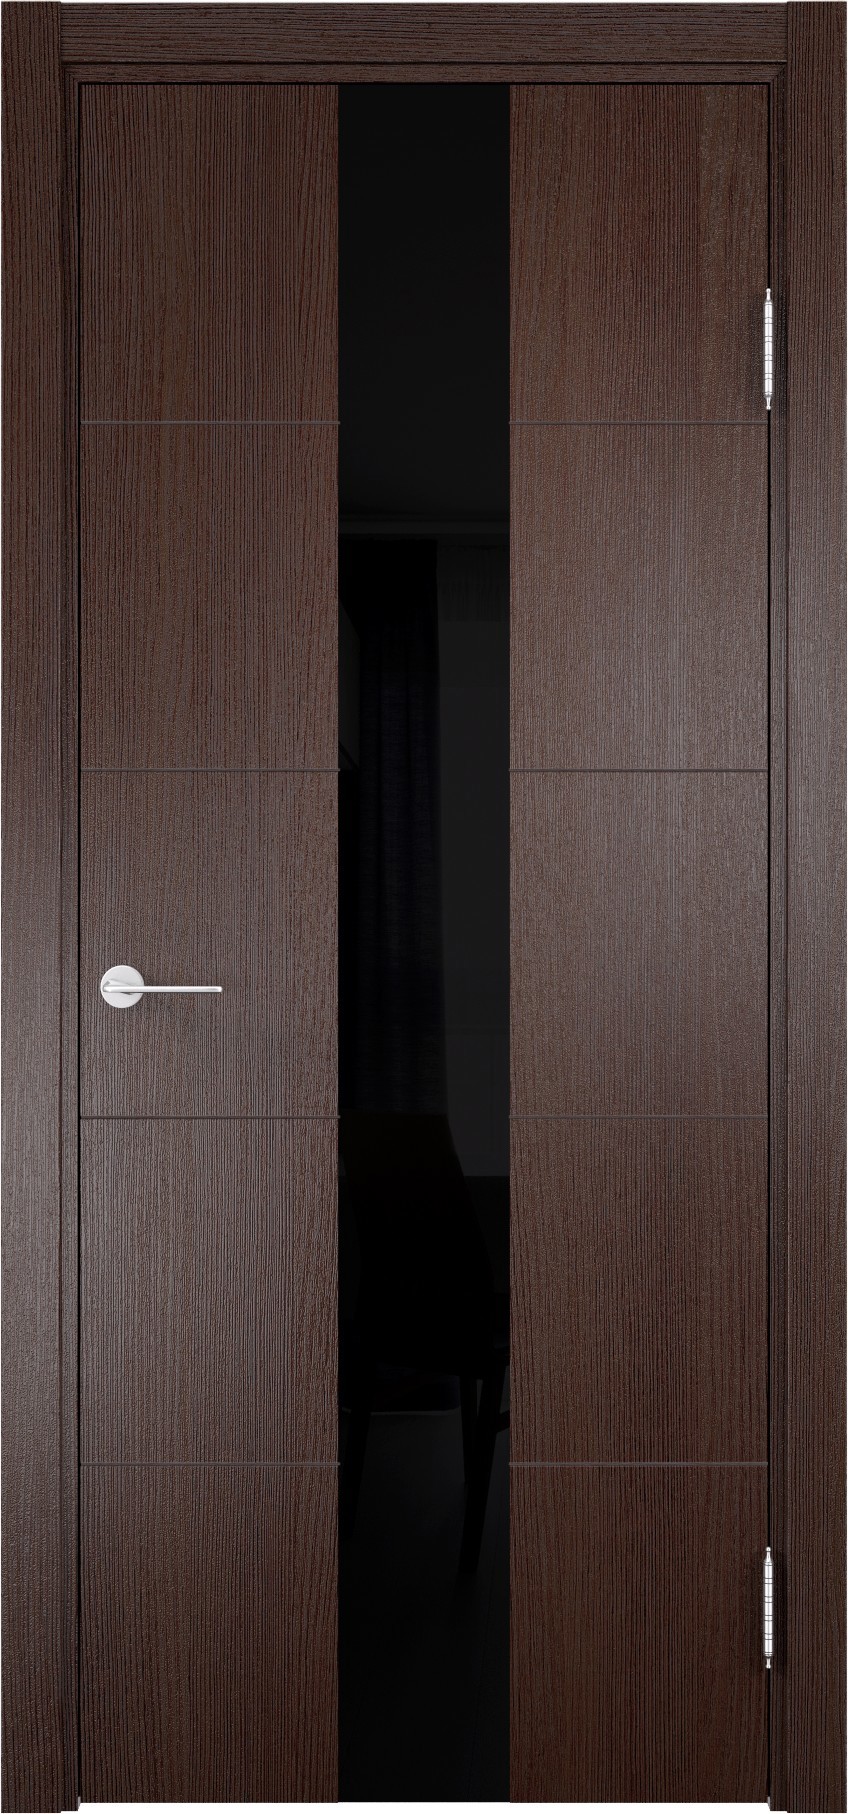 93718187 Дверь межкомнатная Турин (14) остекленная полипропилен цвет дуб графит вералинга 200 x 90 см STLM-0554461 CASAPORTE